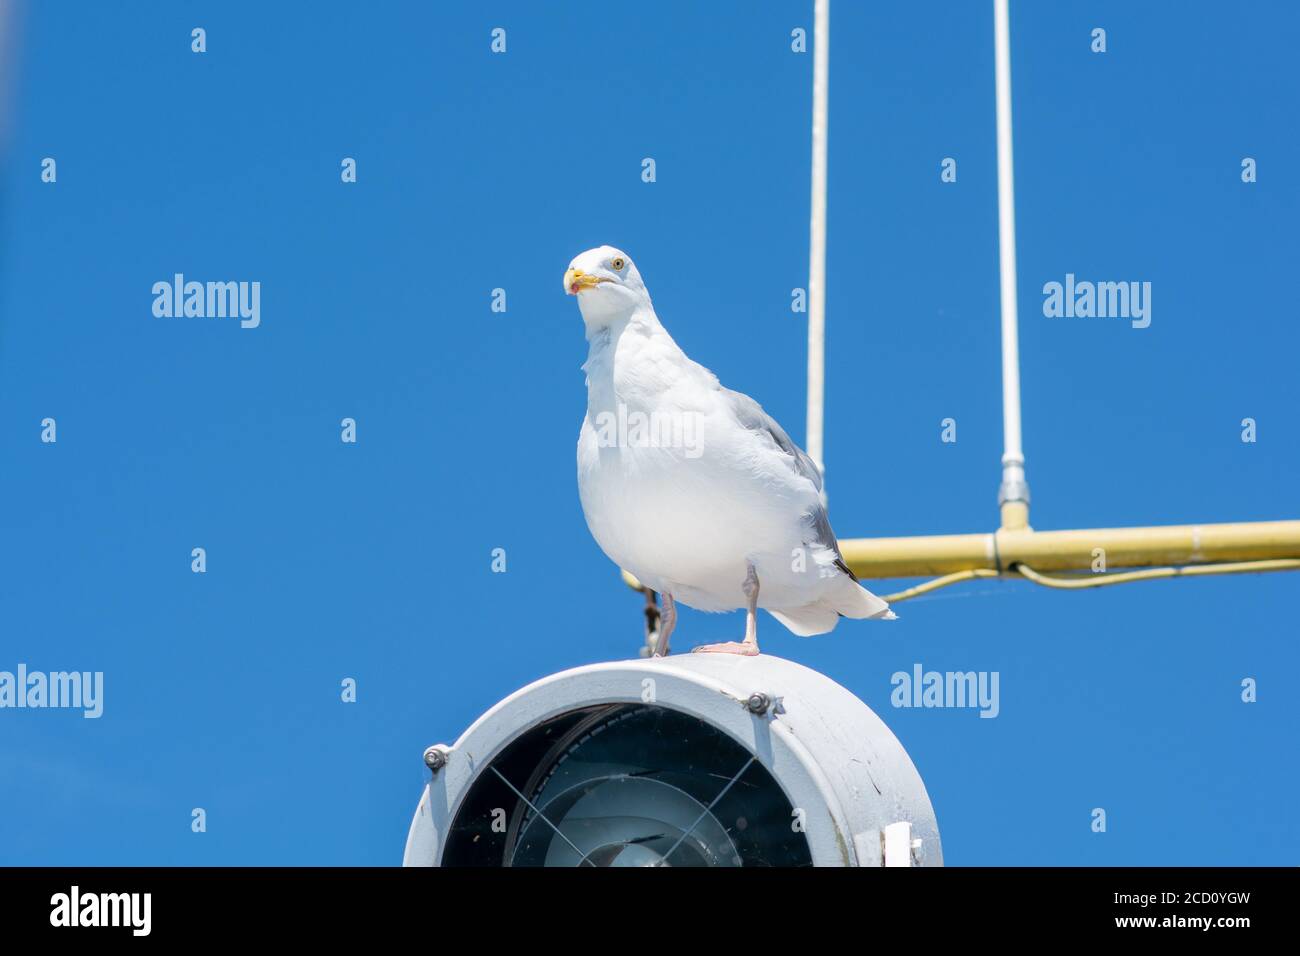 Un mouette blanche assise sur une lampe sur un bateau de pêche. Ciel bleu clair en arrière-plan Banque D'Images